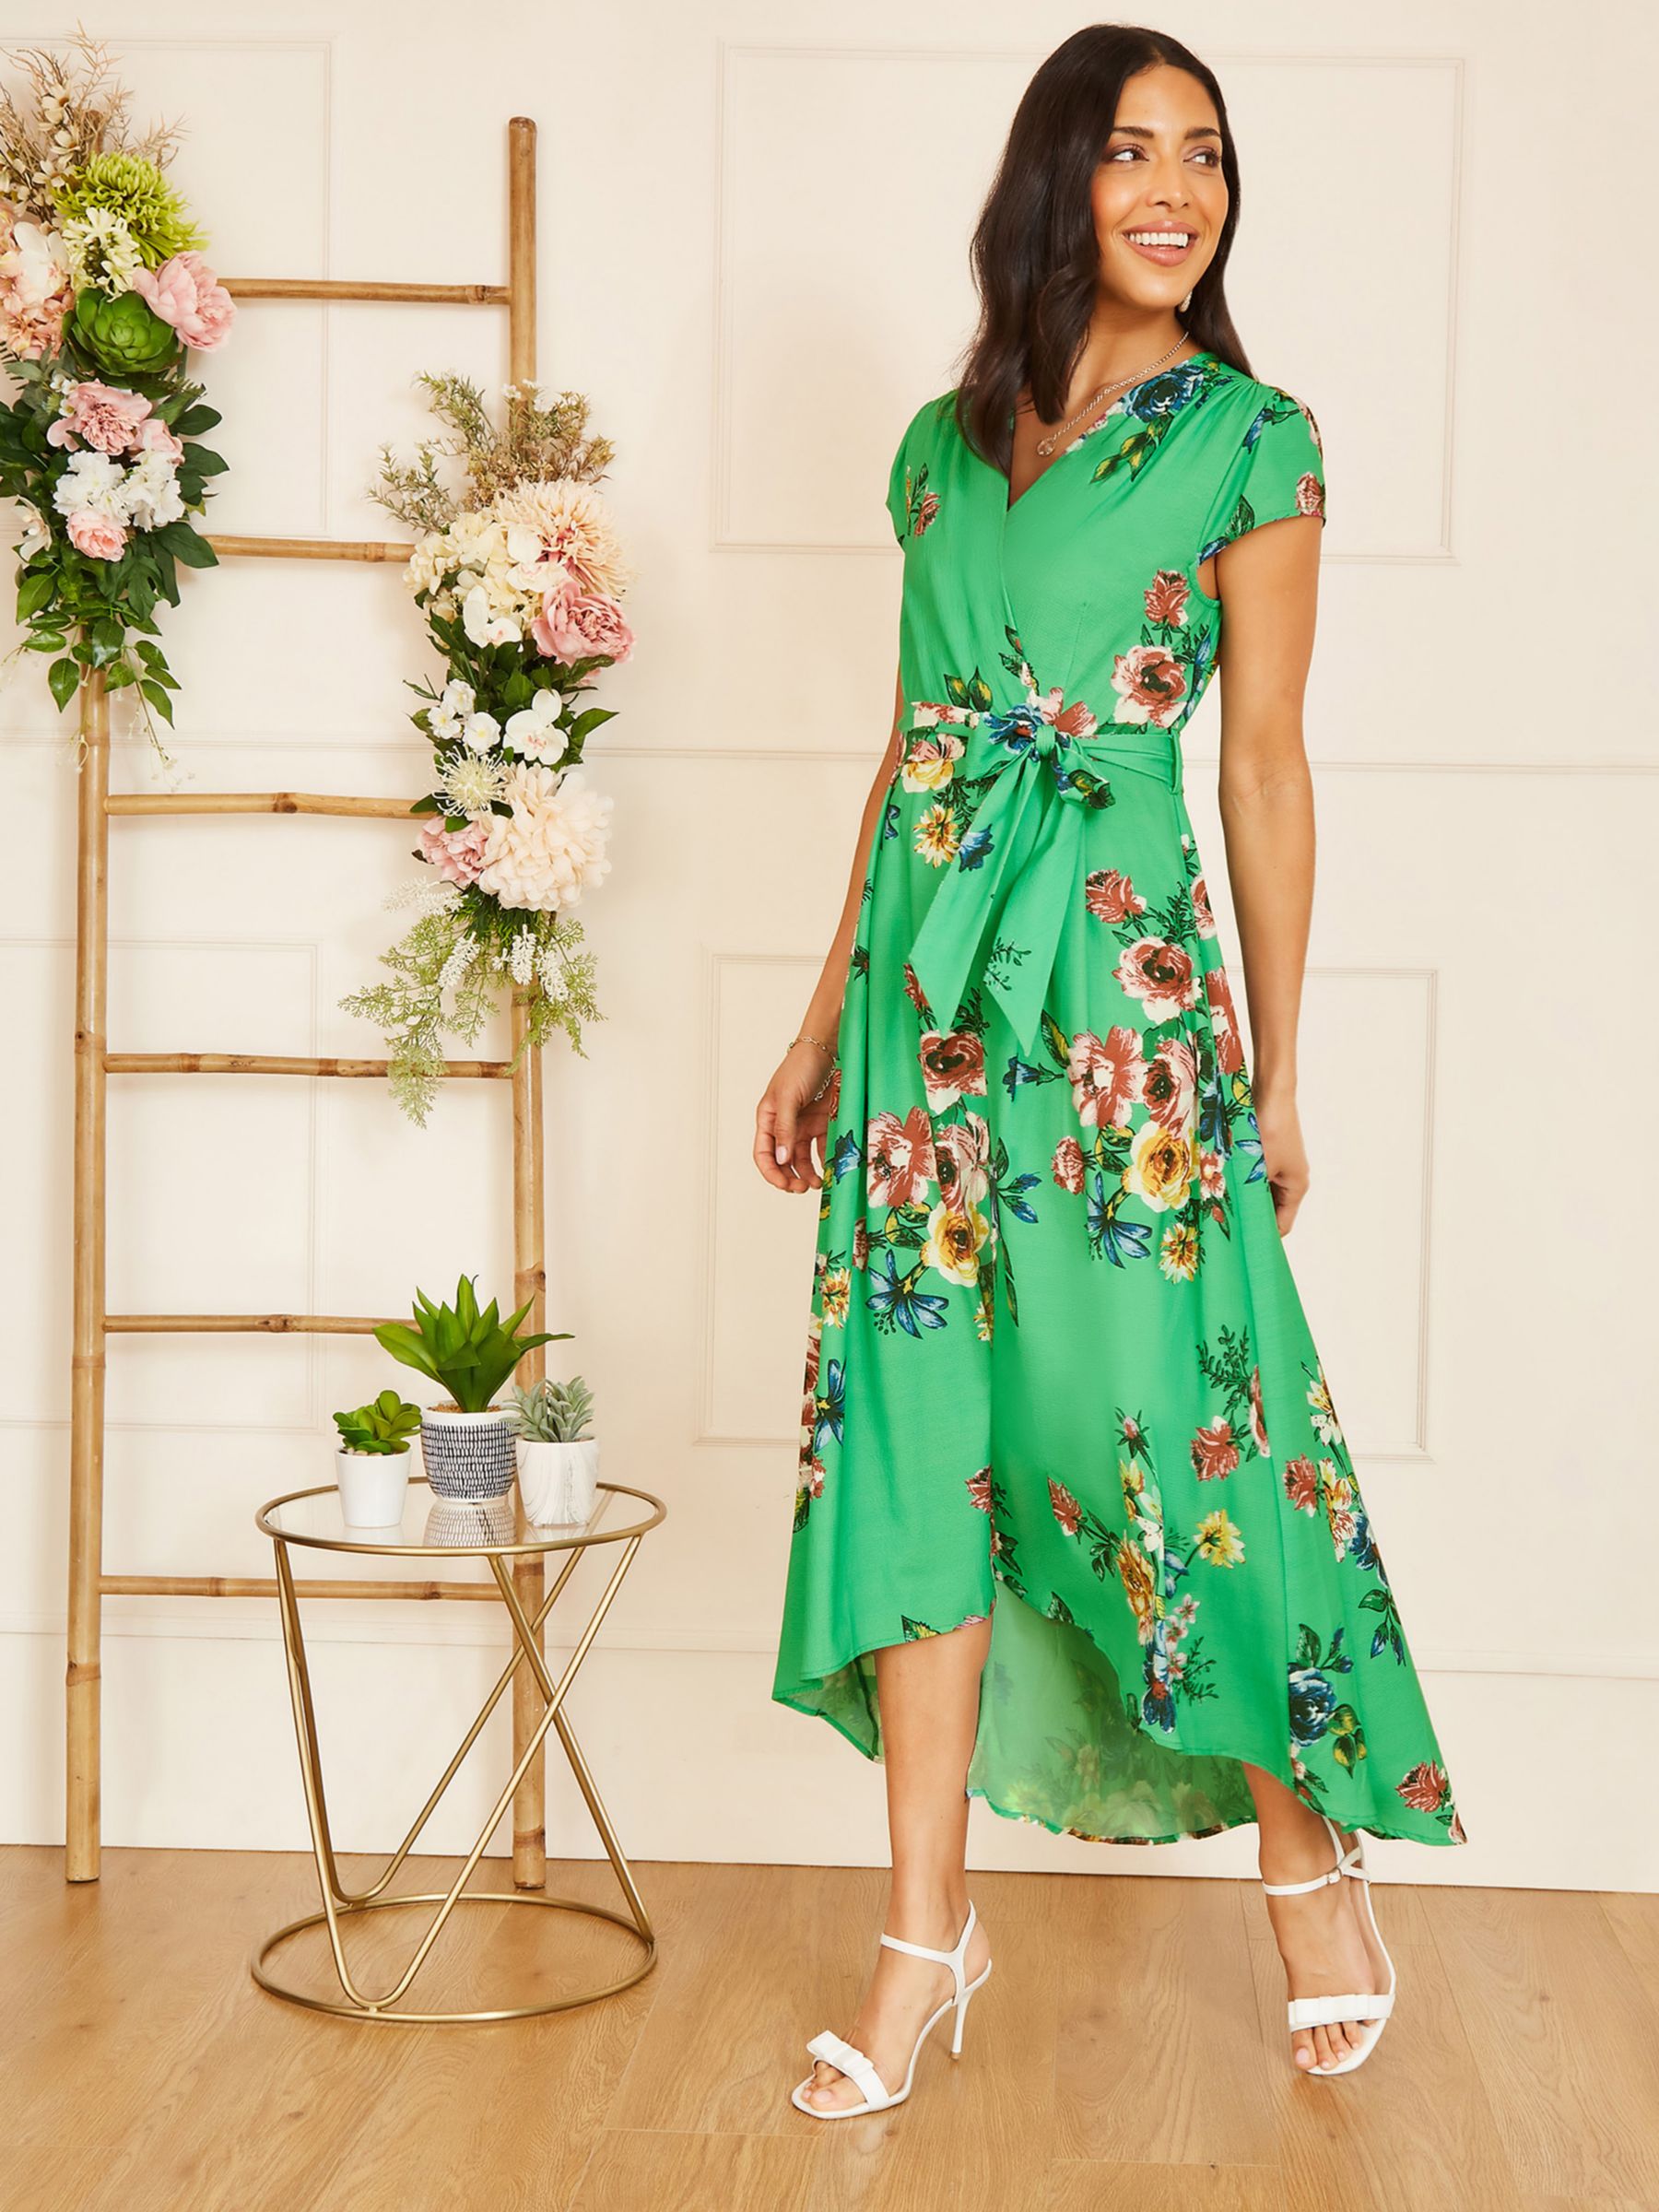 Print & Floral Dresses for Women  Women's Floral-Print Dresses